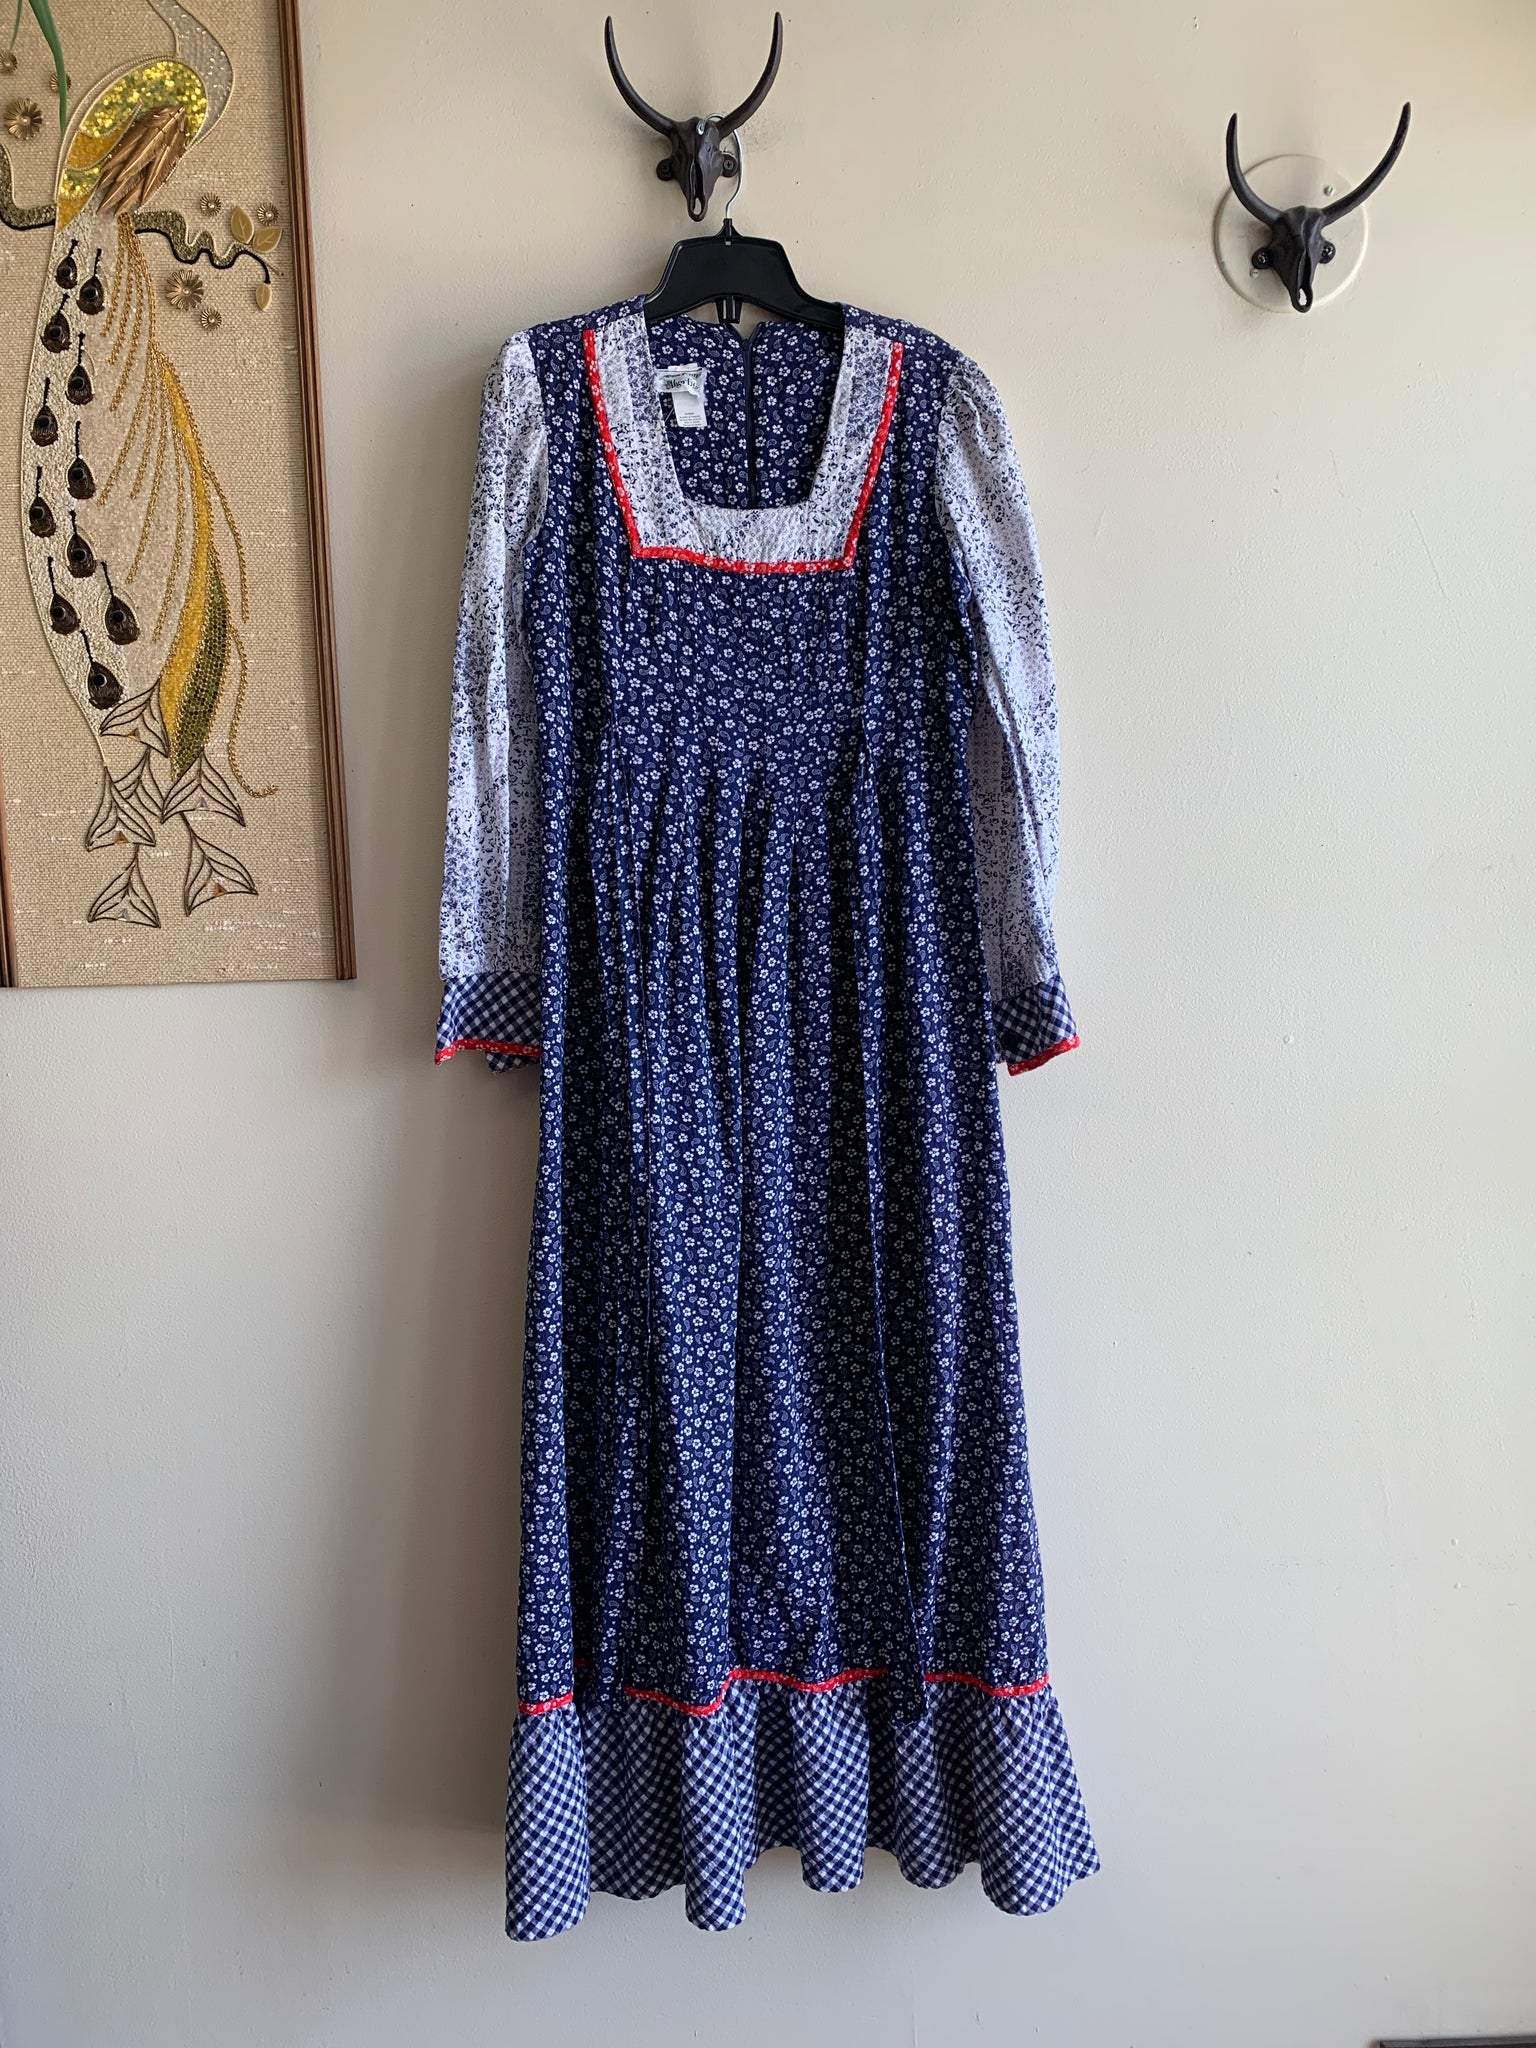 Blue & White Prairie Dress - M